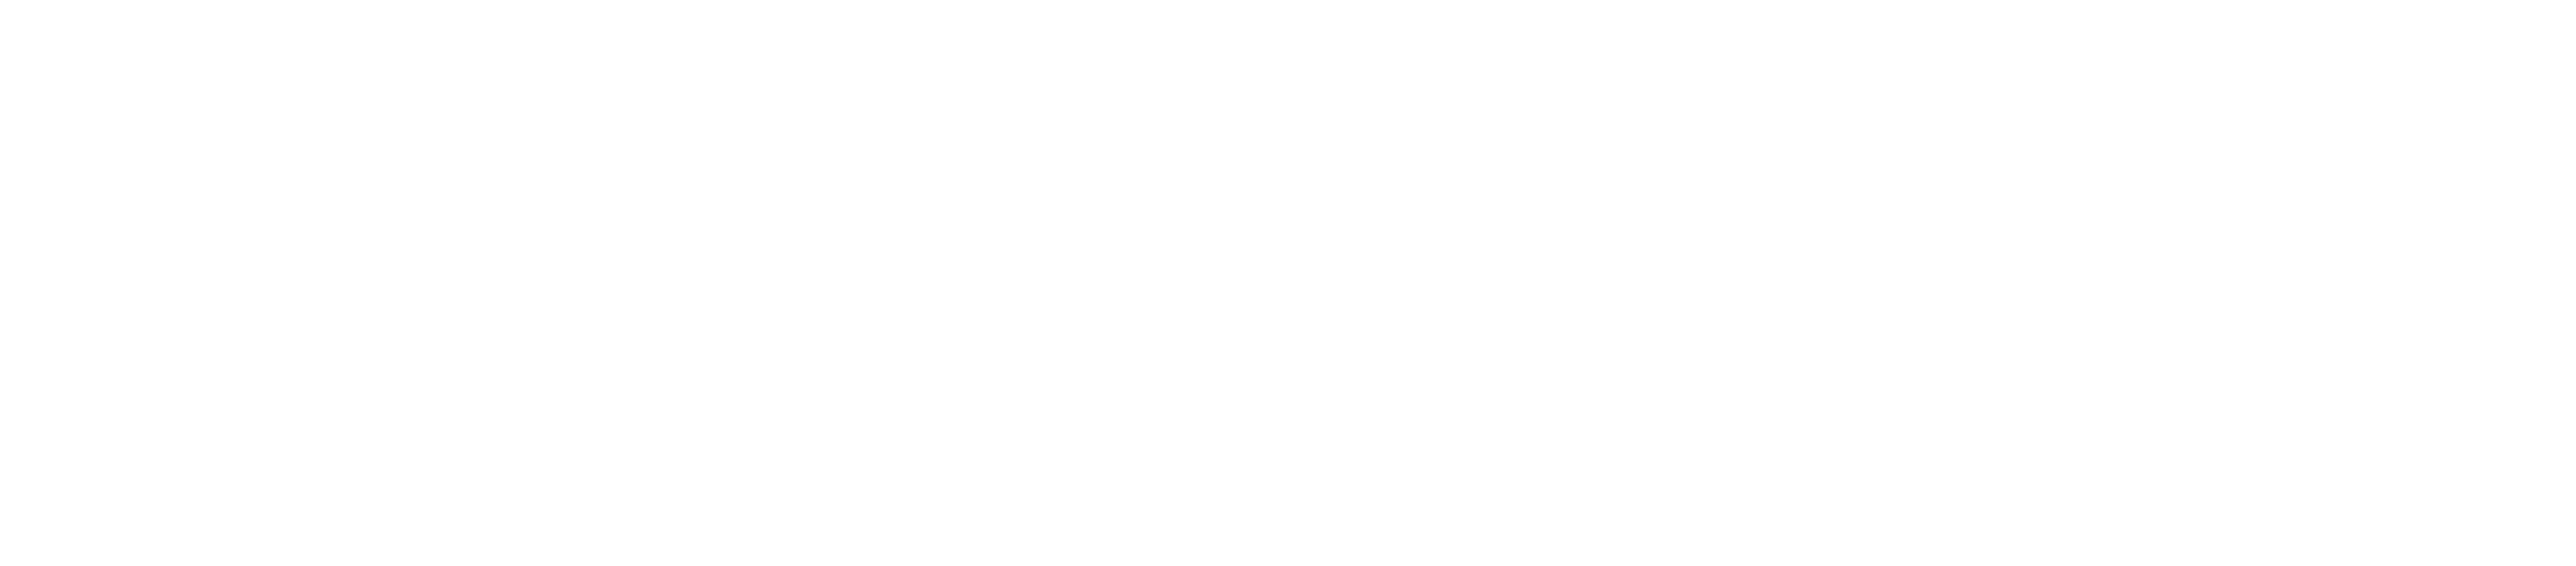 ABetter Design Company